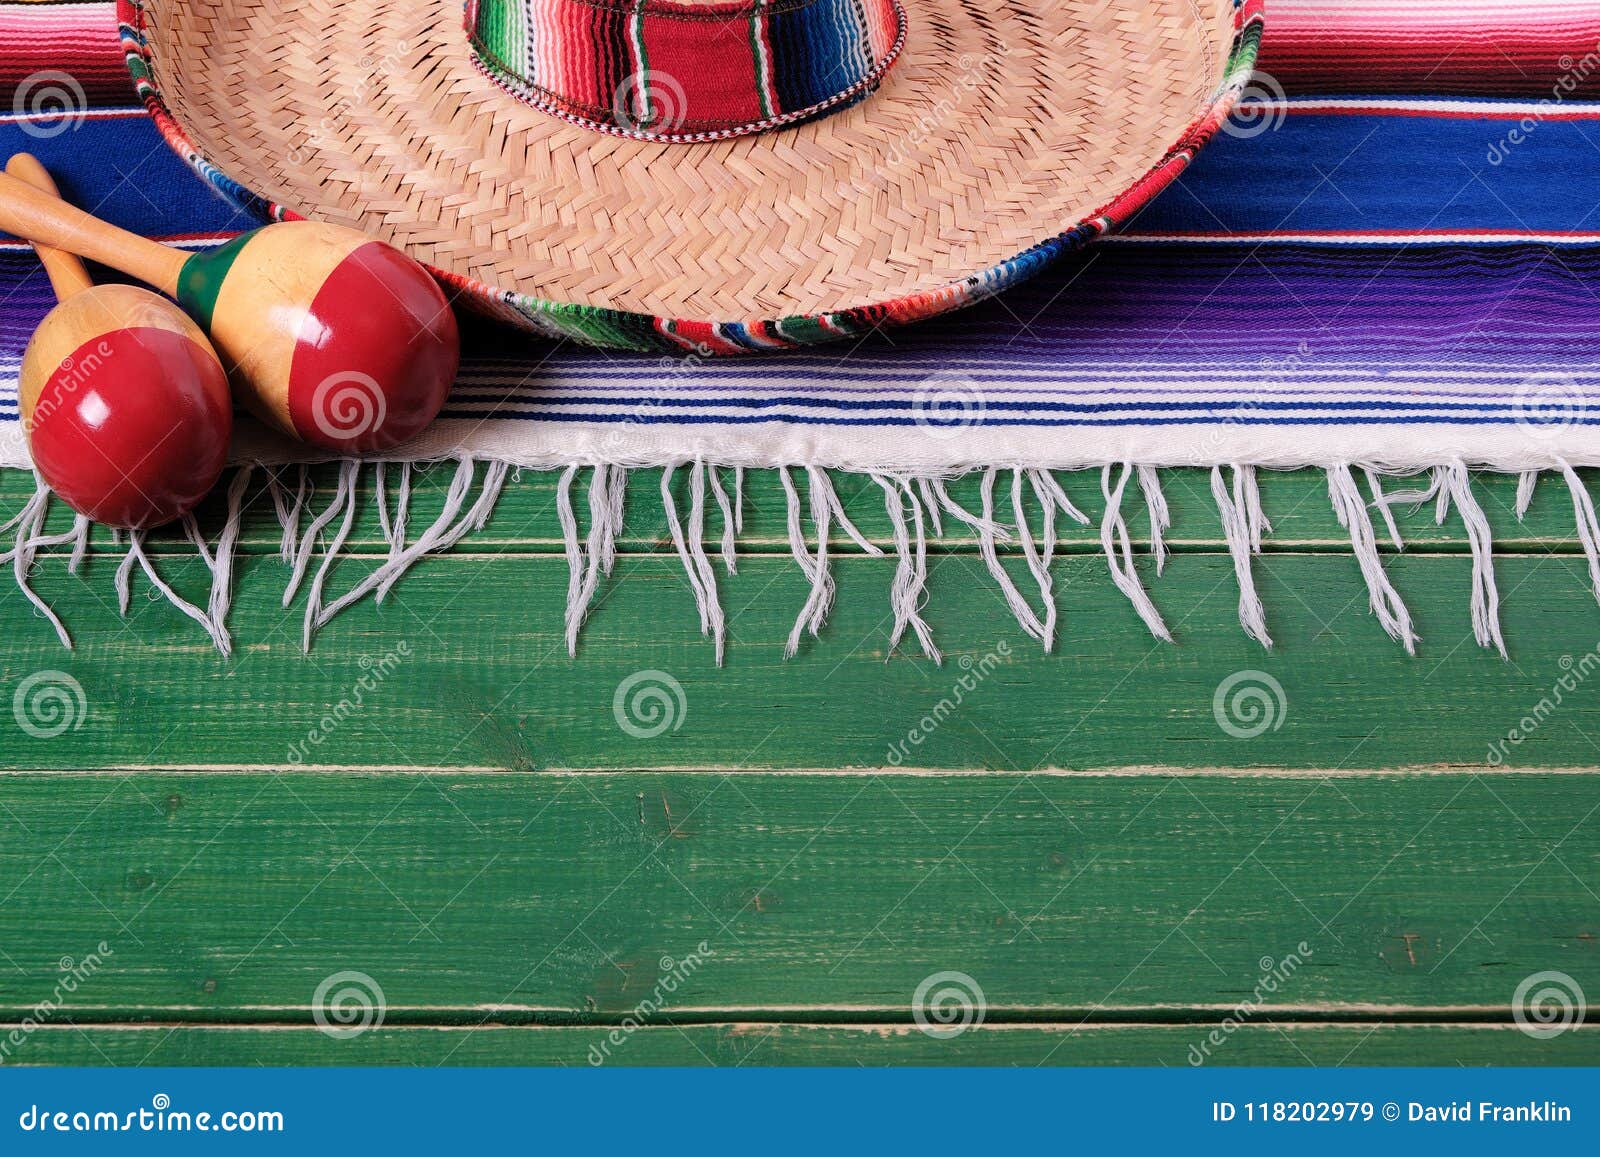 mexico mexican sombrero maracas fiesta wood background border top edge